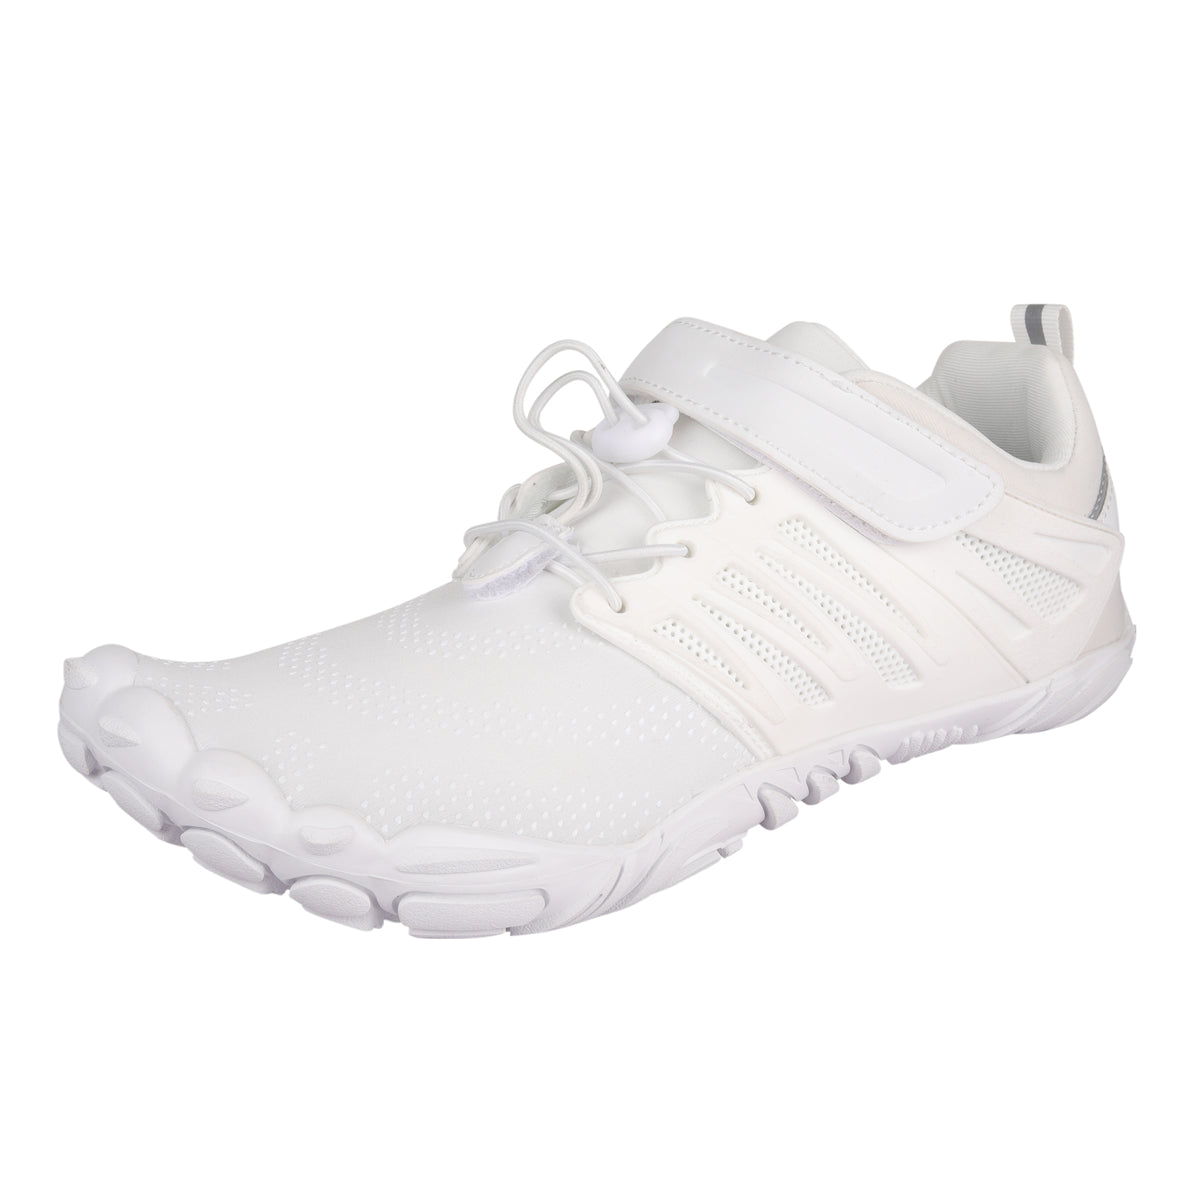 ANDUNE Men’s Barefoot & Minimalist Cross Training Shoes – All Terrain White Dash